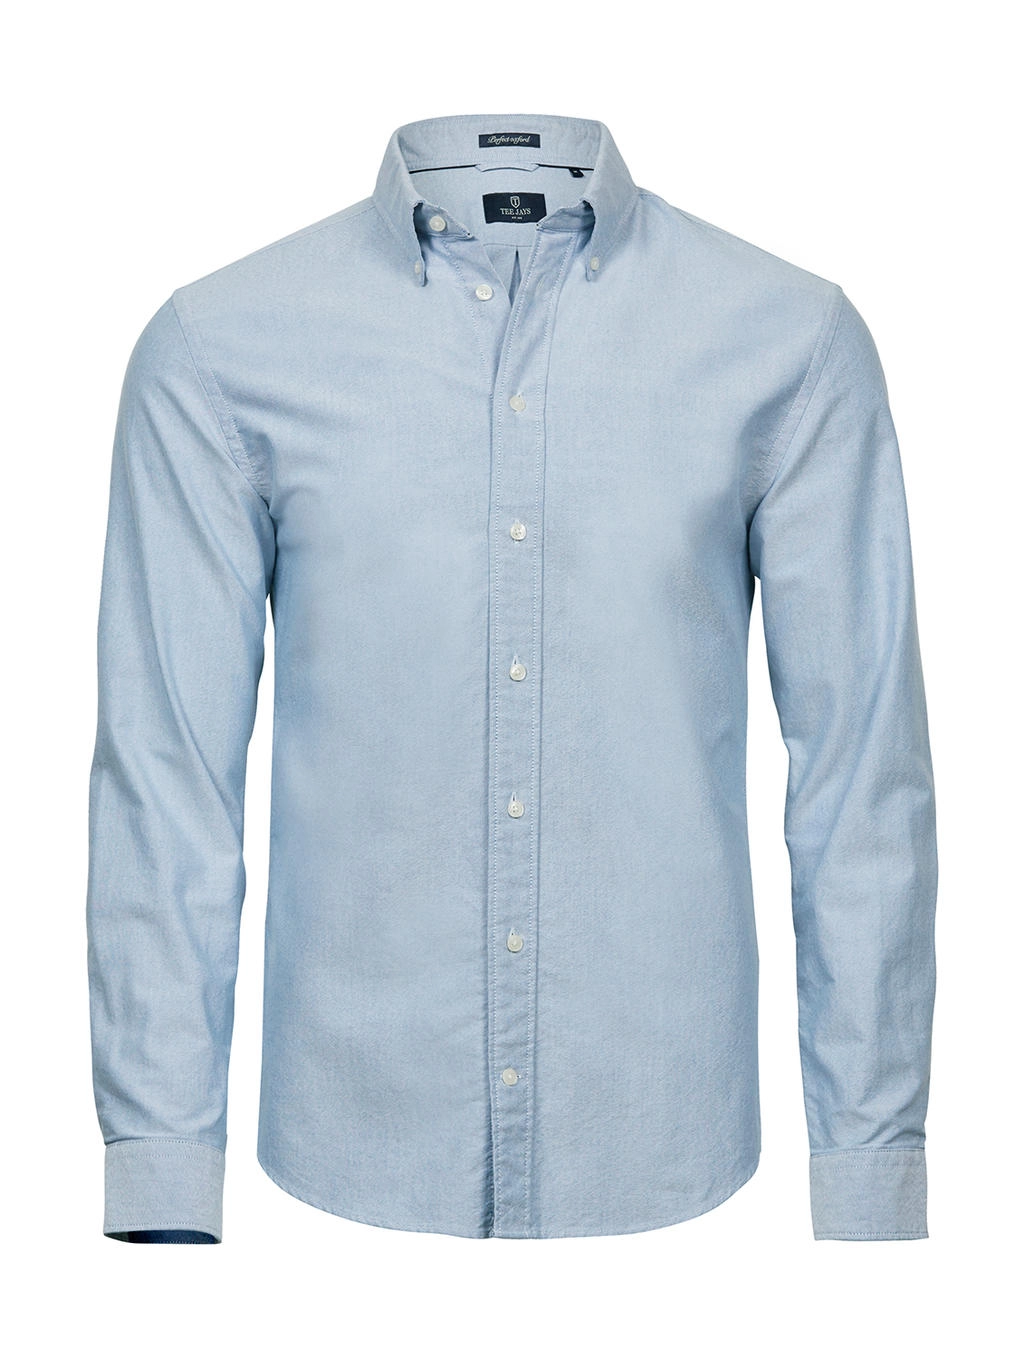 Perfect Oxford Shirt zum Besticken und Bedrucken in der Farbe Light Blue mit Ihren Logo, Schriftzug oder Motiv.